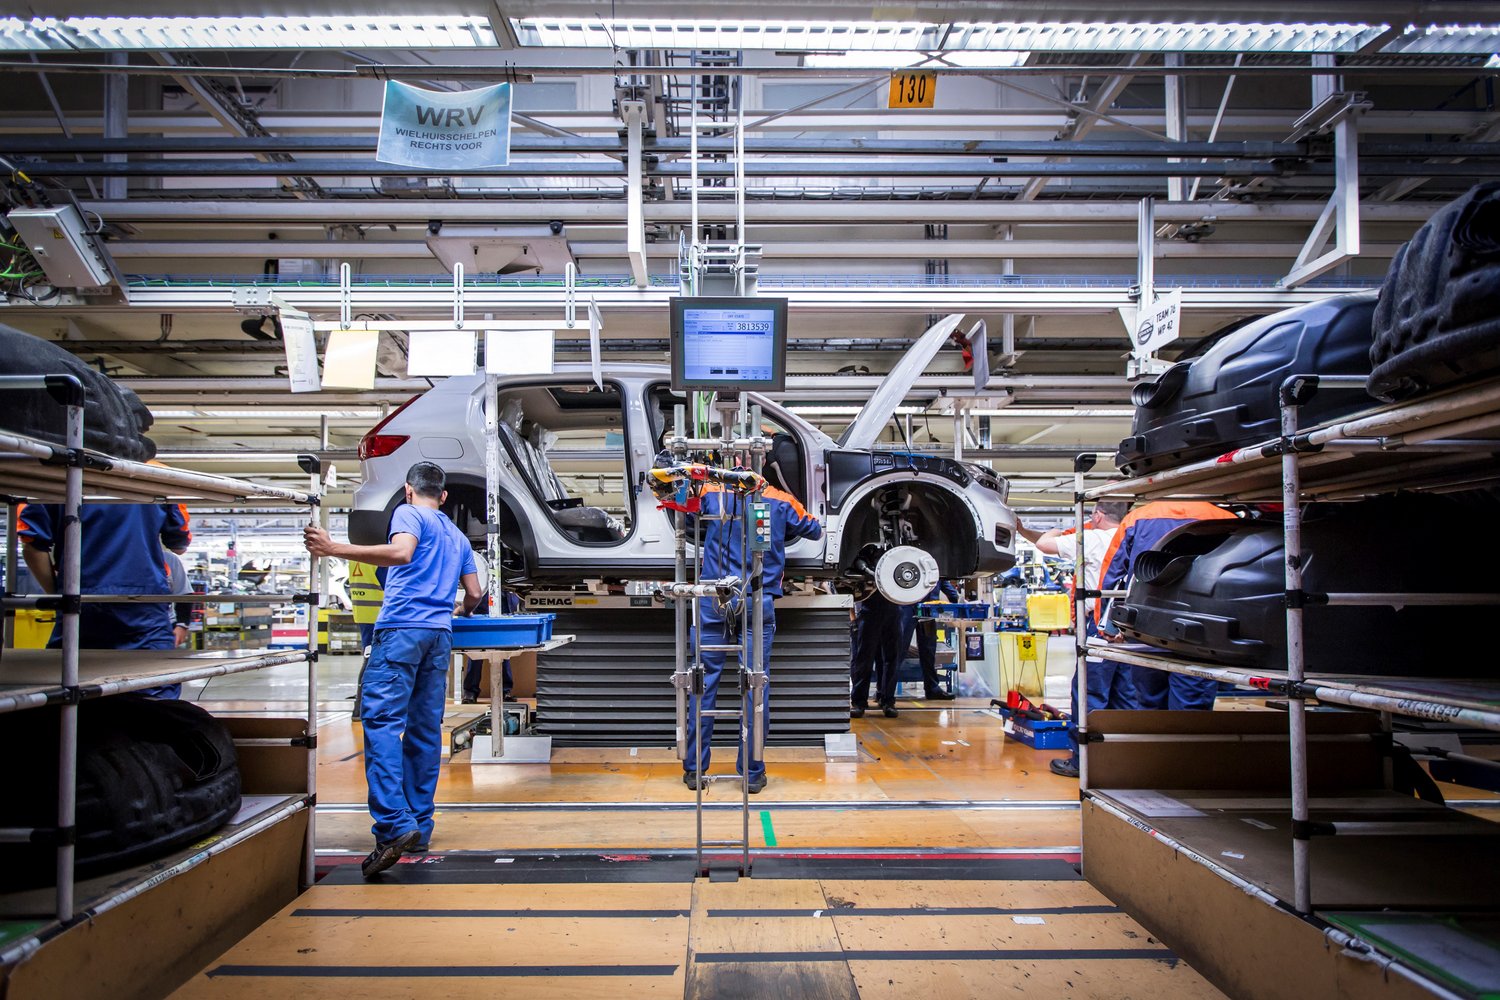 Megkezdődött a legfontosabb Volvo szériagyártása 12